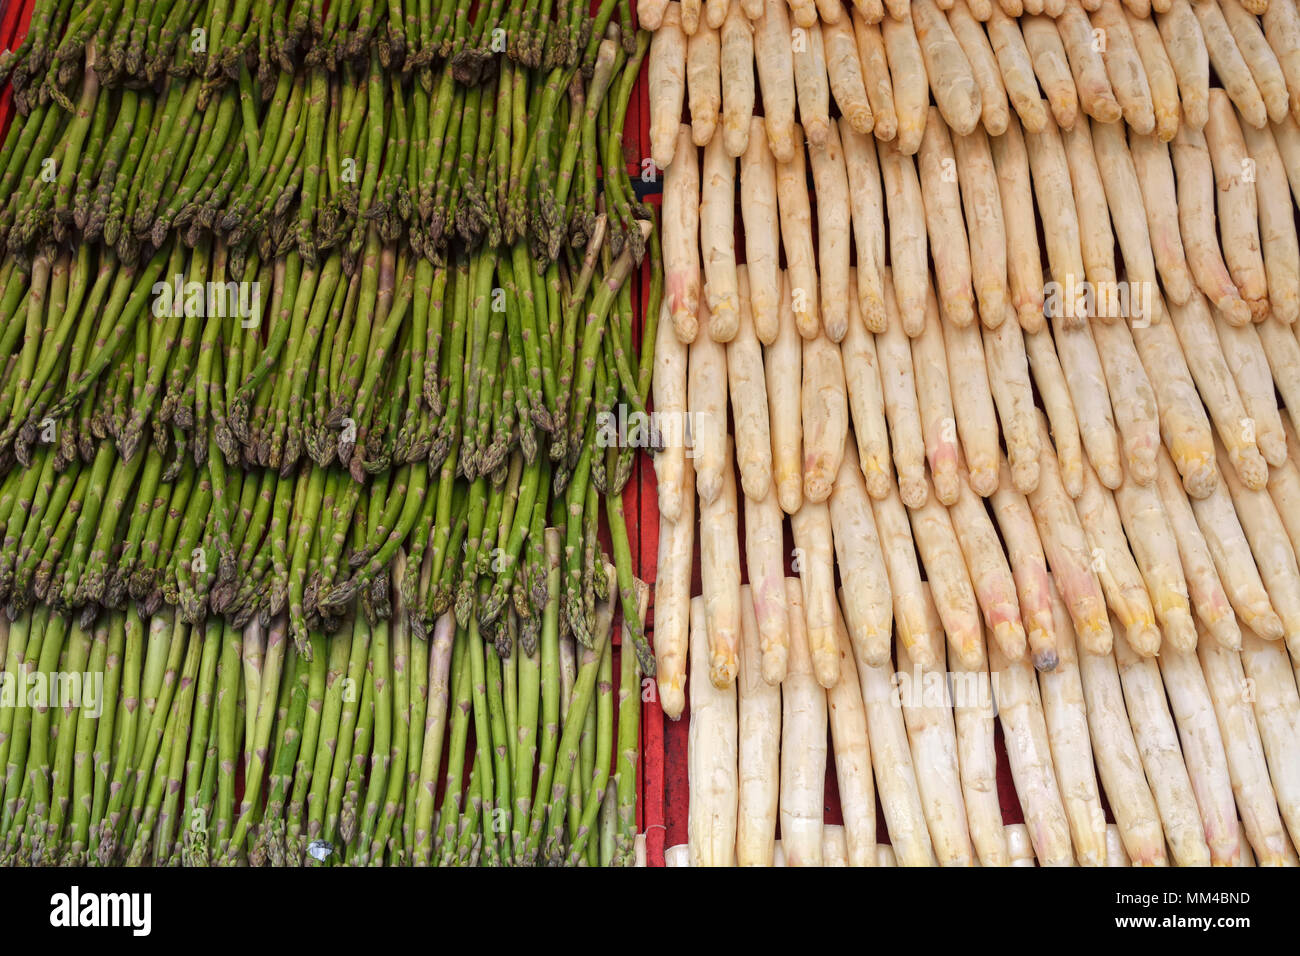 Gli asparagi selvatici e coltivati asparagi (a destra) nell'Hotorget street market alimentare. Stoccolma, Svezia Foto Stock